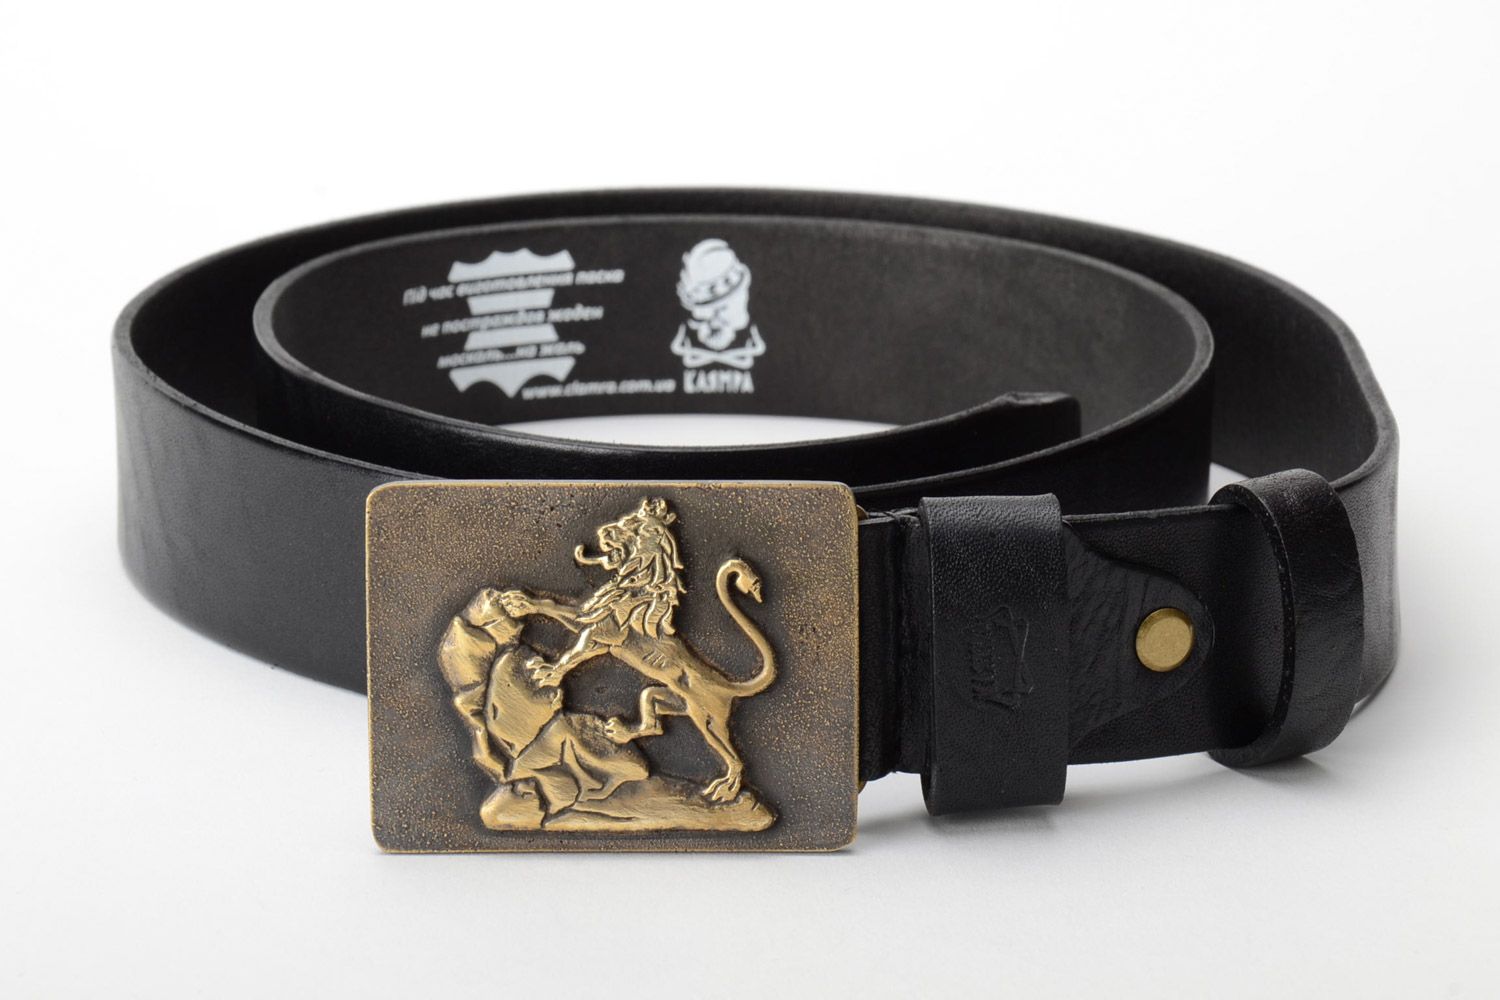 Cinturón de cuero natural con hebilla metálica con estampado artesanal foto 1